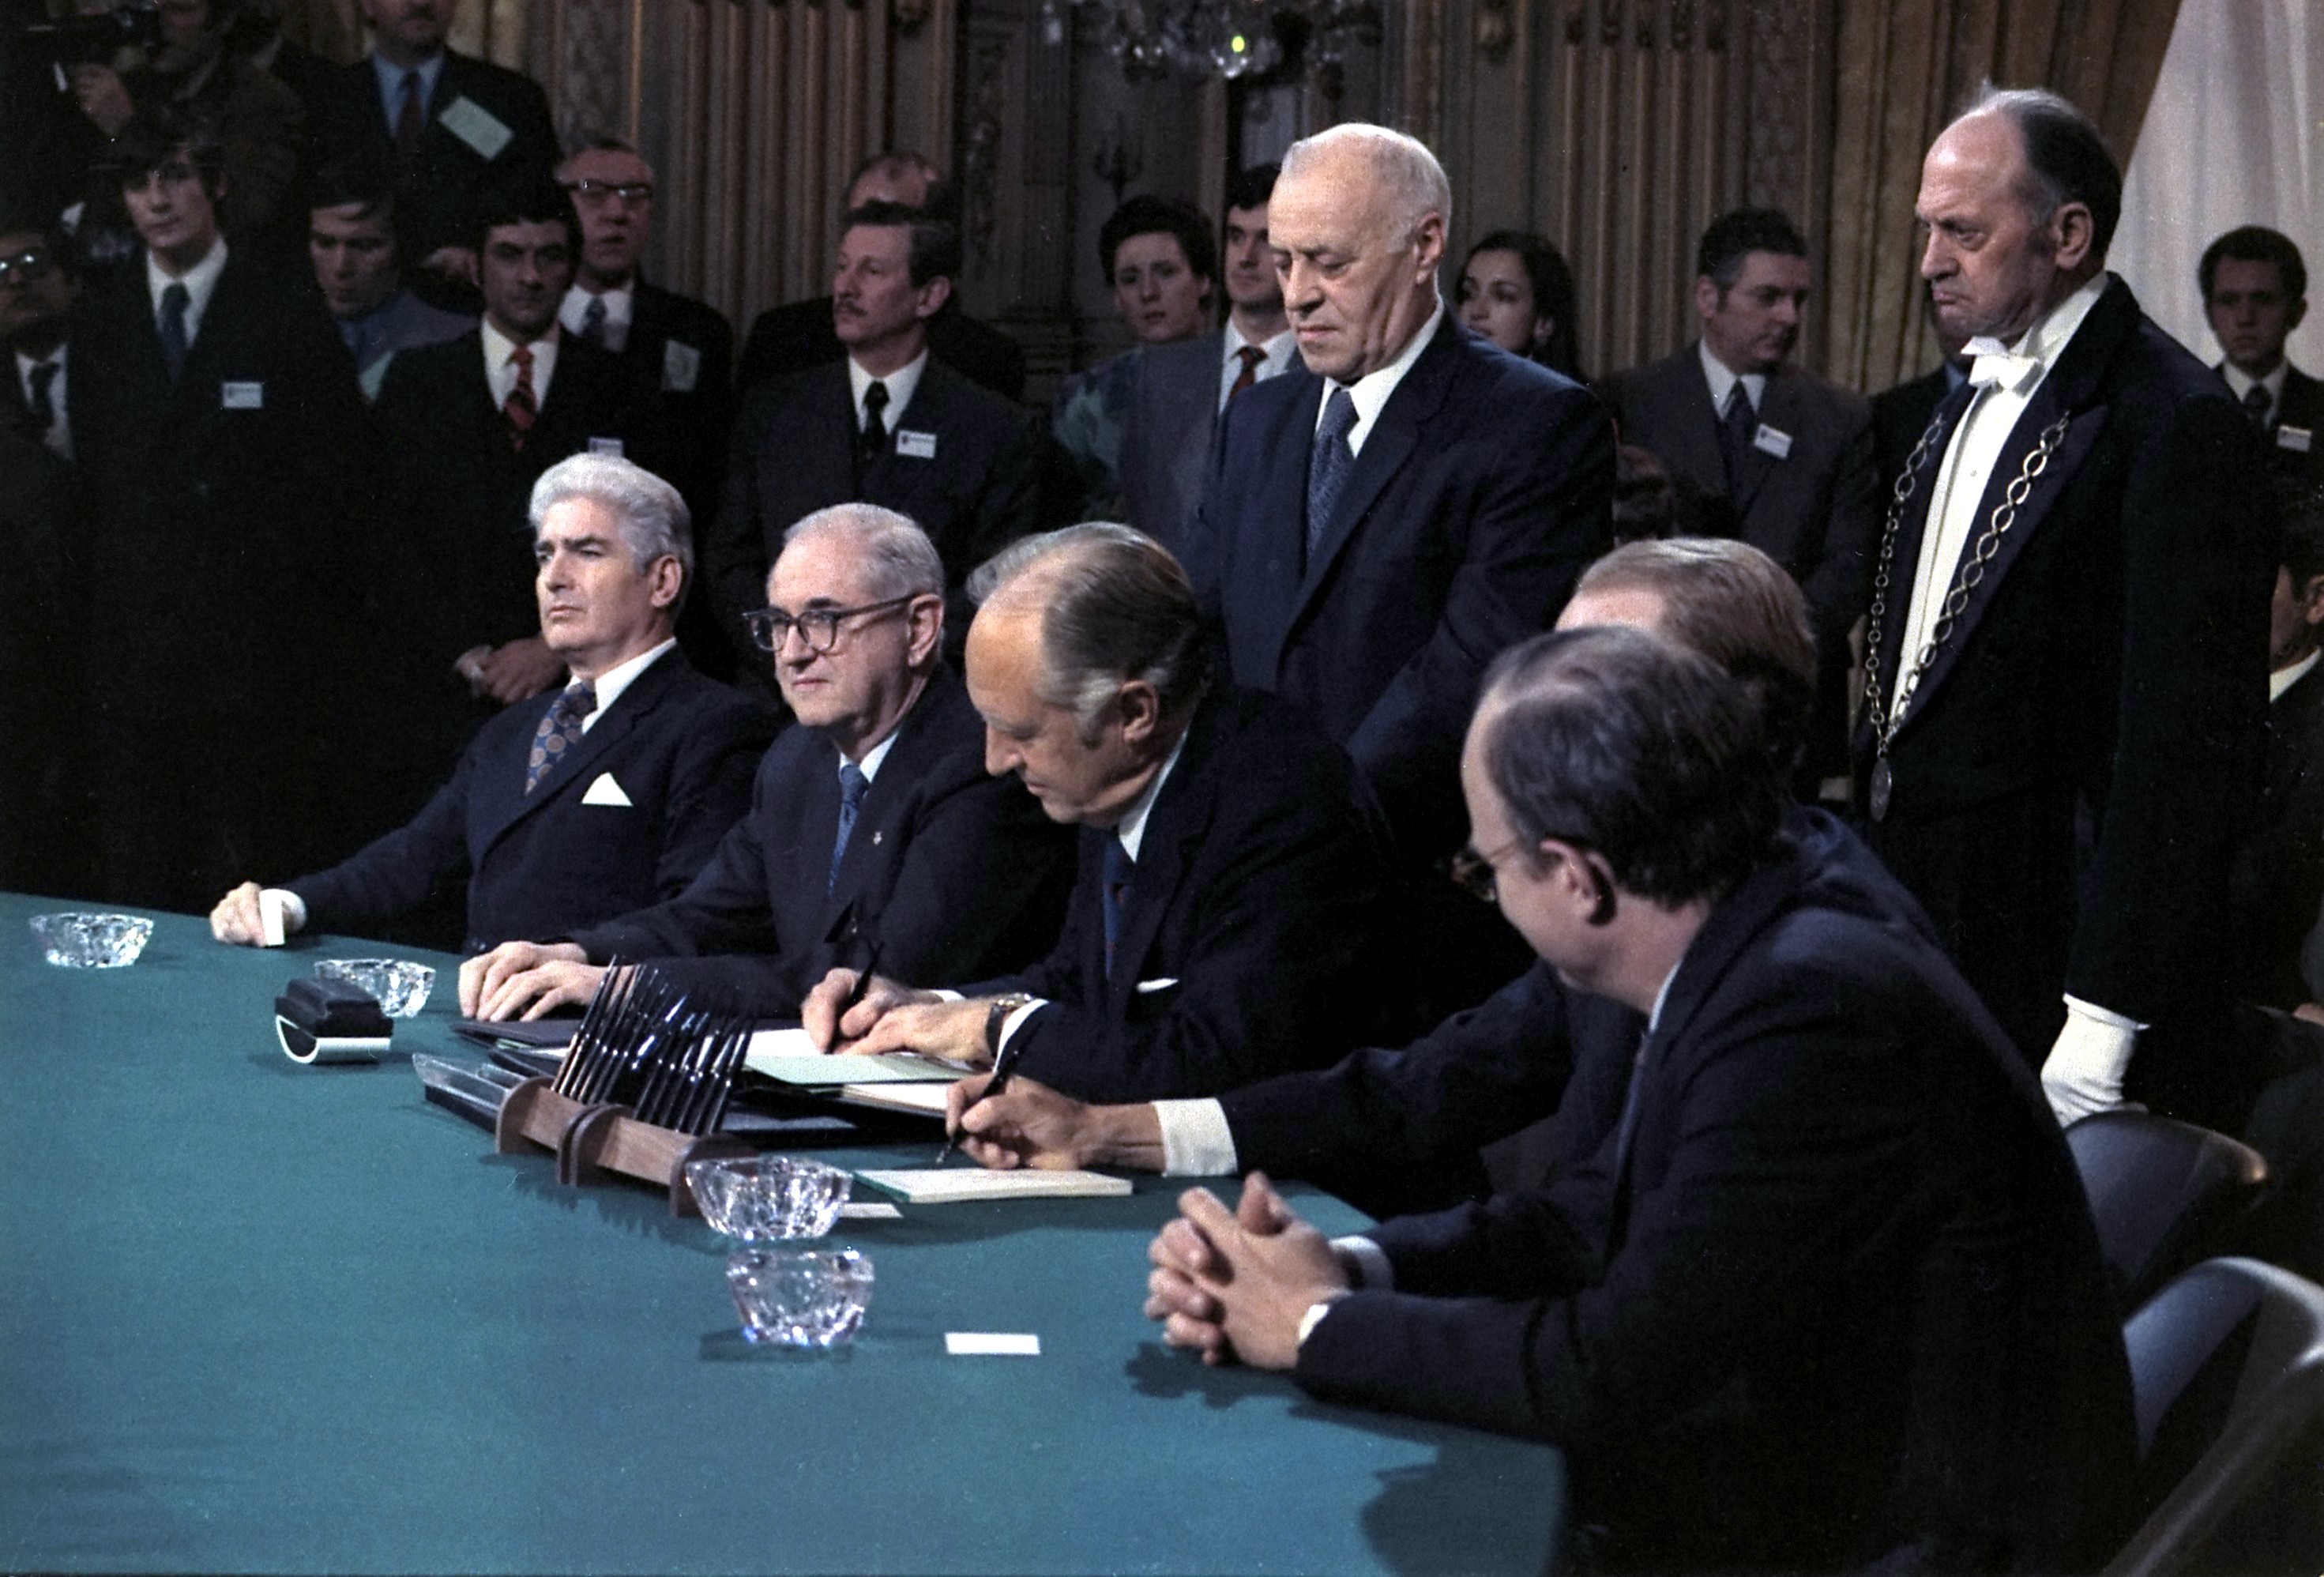 Signature des accords de paix à l’issue de la guerre du Vietnam, le 27 janvier 1973. Les affrontements prendront fin avec la prise de Saigon par les Soviétiques deux ans plus tard. © Knudsen, Robert L., Wikimedia Commons, DP